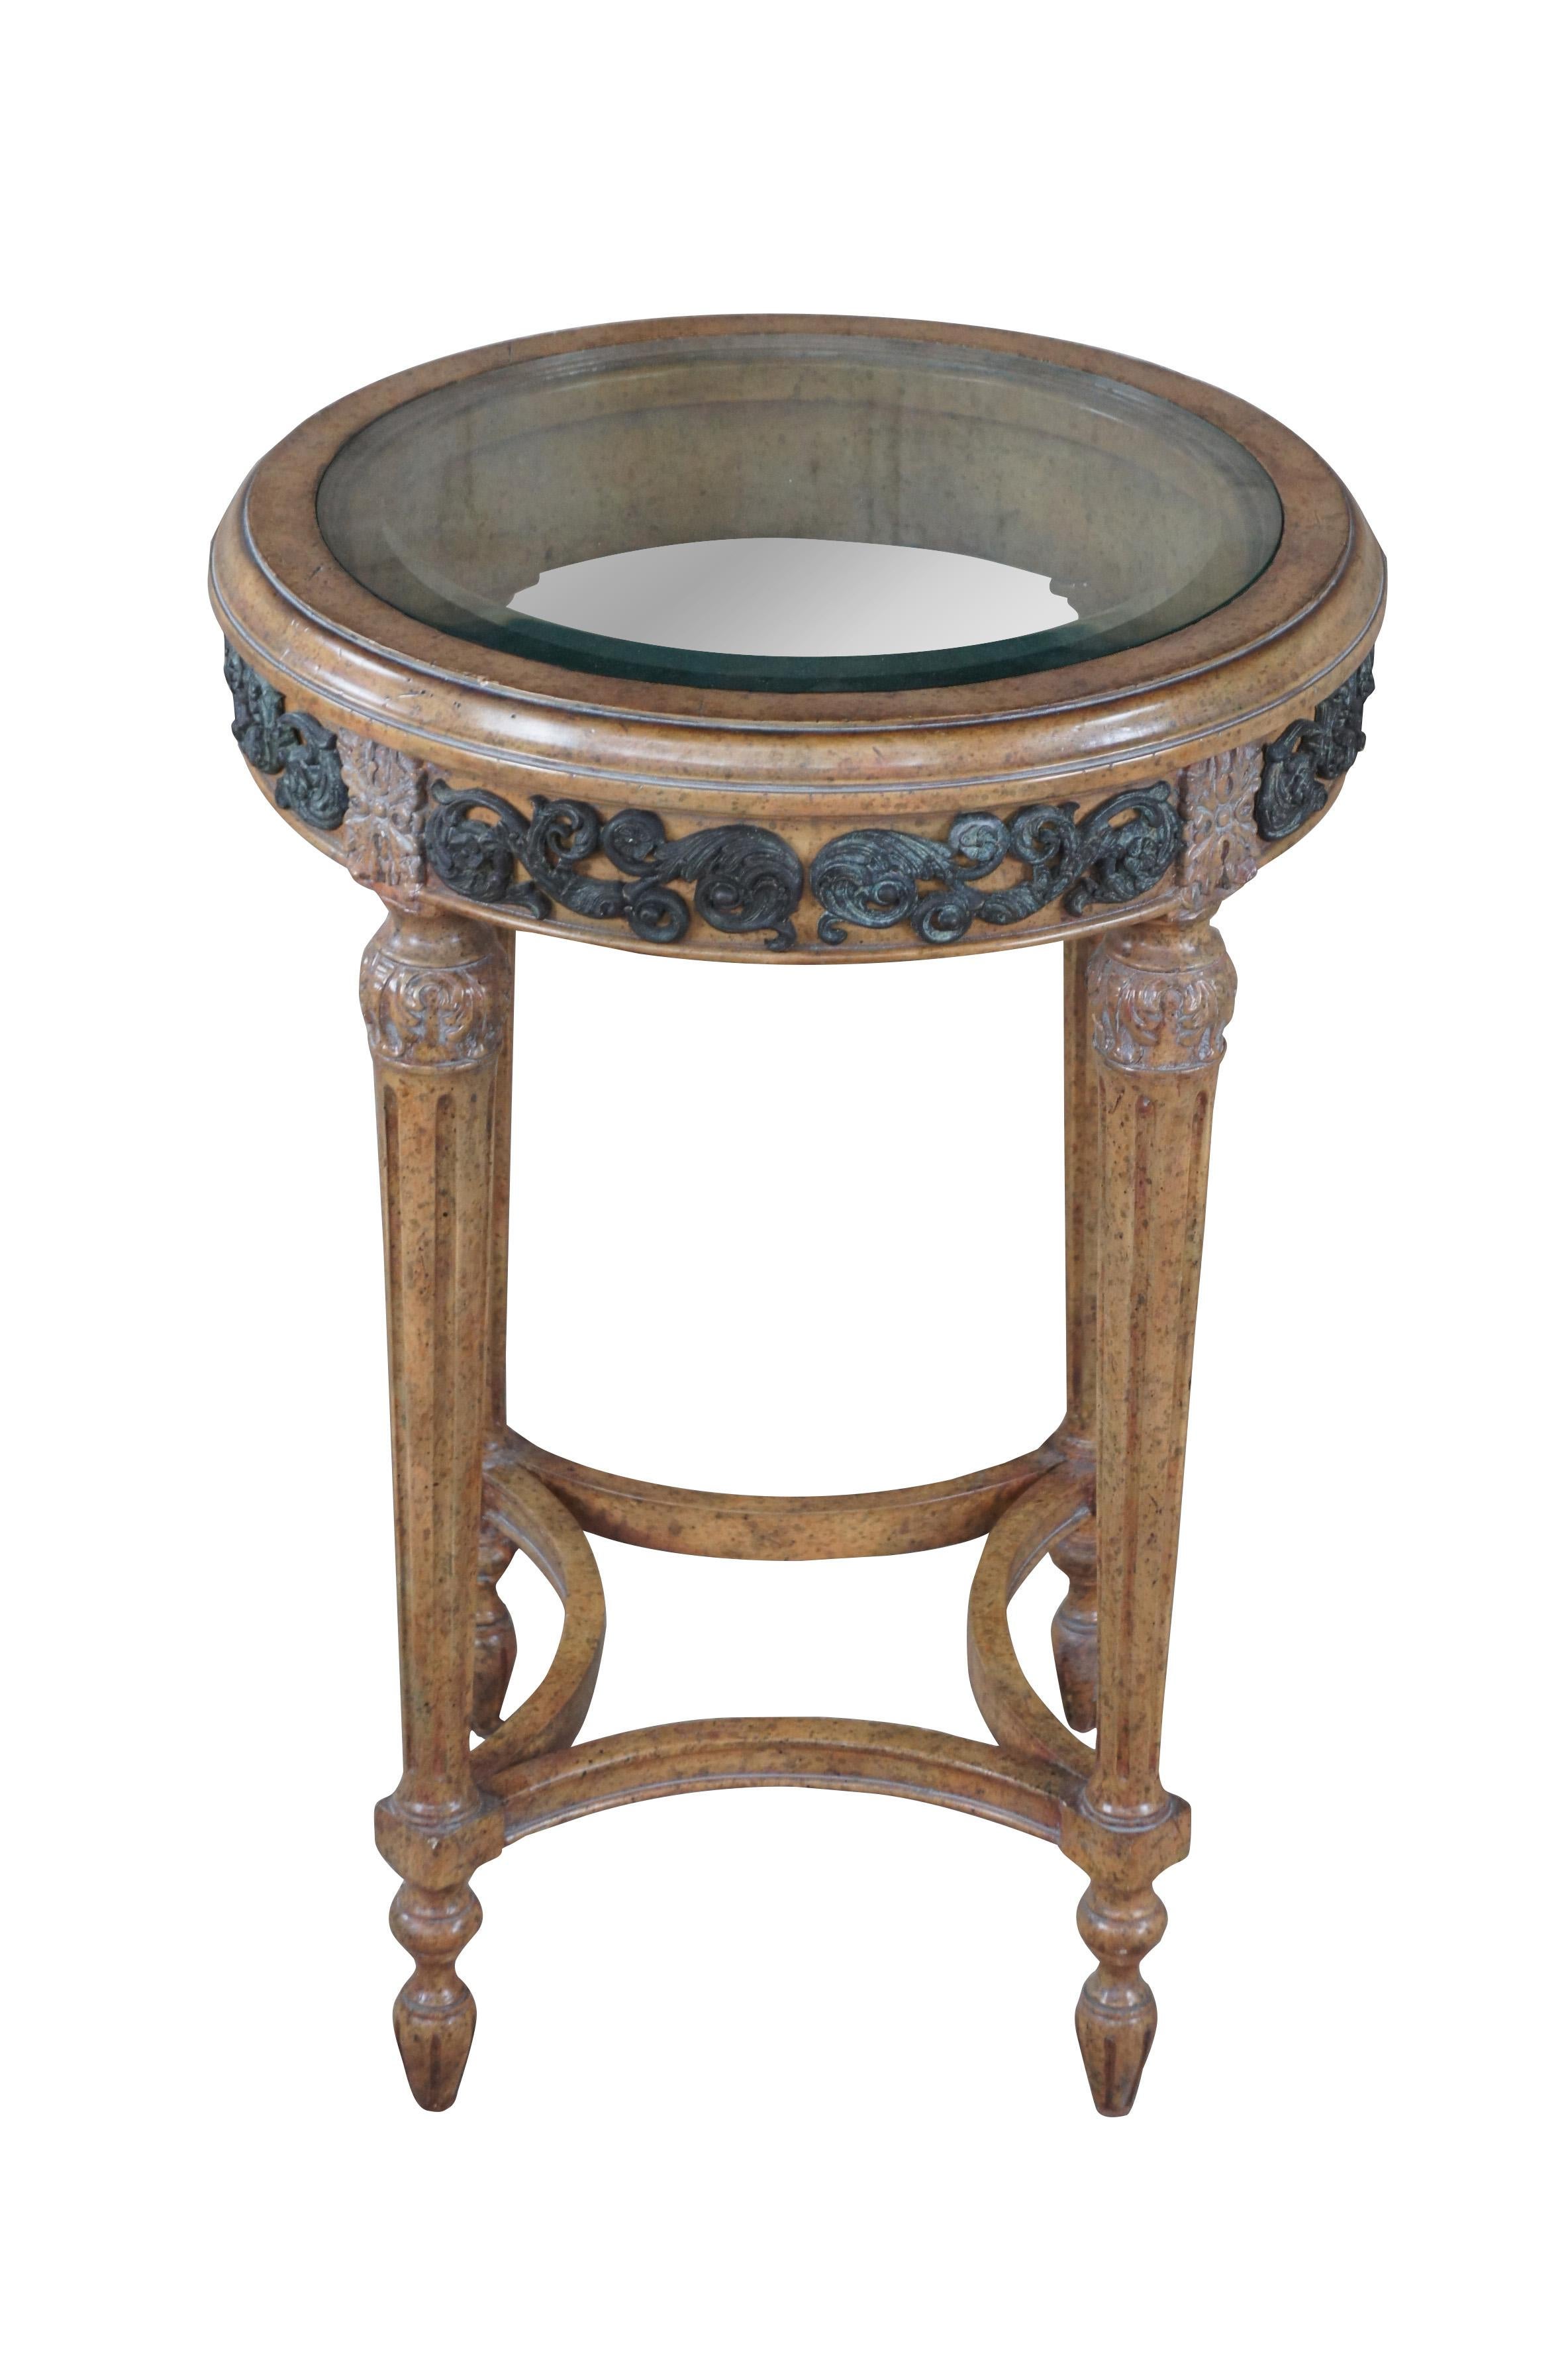 Vintage Maitland Smith French Louis XVI Gueridon / martini side table.  Fabriquée en noyer, elle présente une forme ronde avec un plateau en verre biseauté, des accents floraux et d'acanthe, et des pieds fuselés et cannelés.

Dimensions :
18